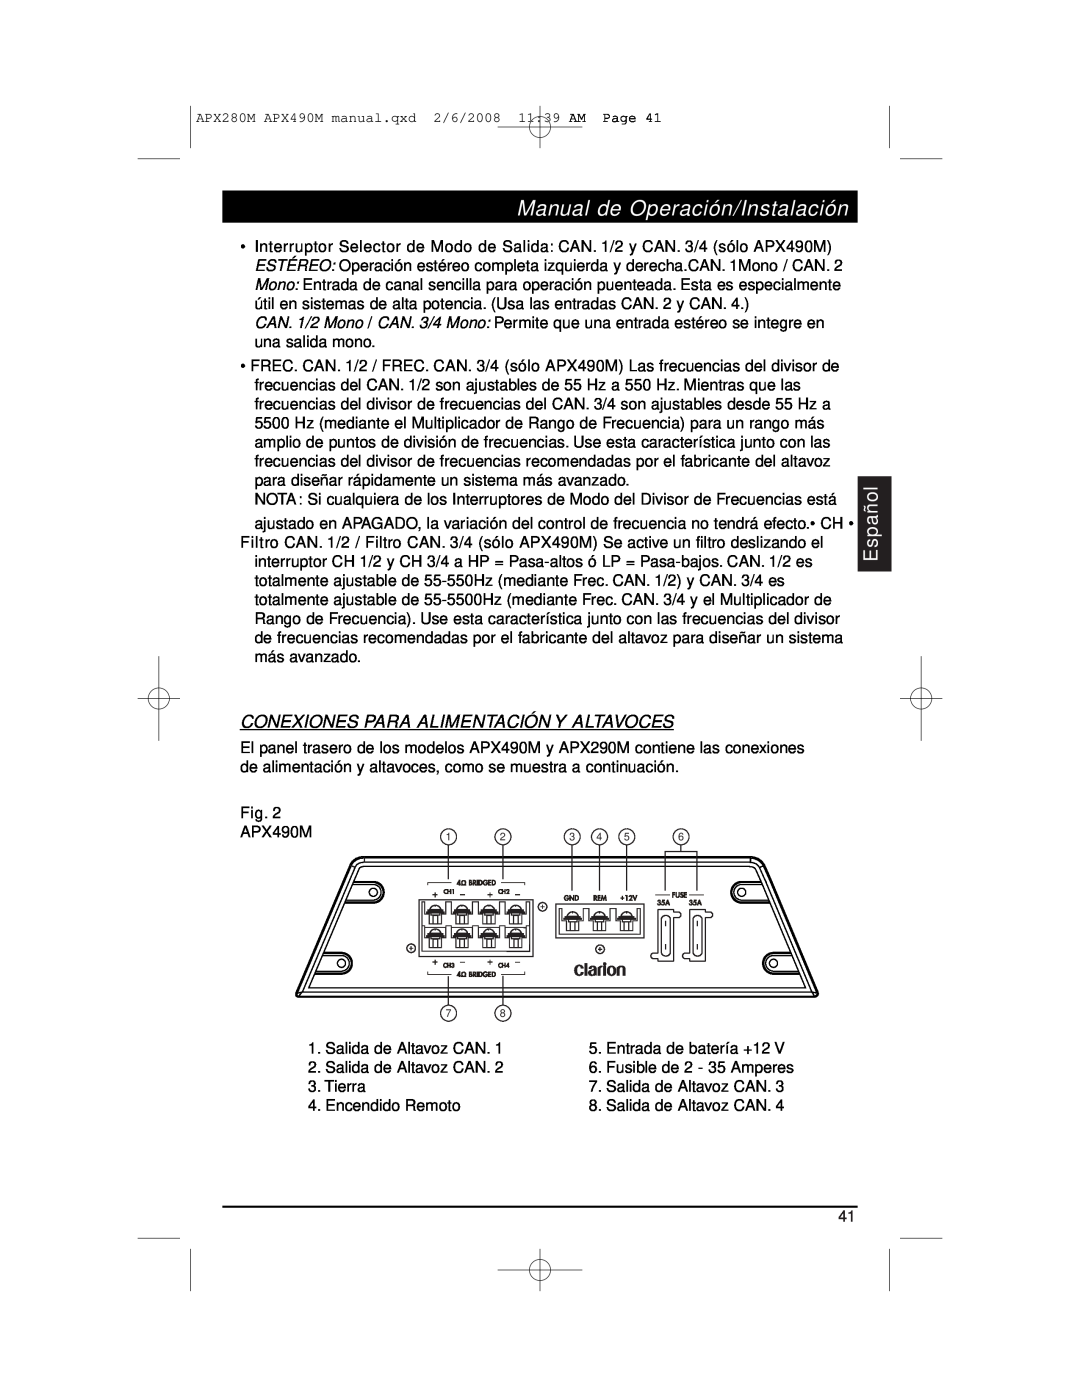 Clarion APX290M installation manual Conexiones Para Alimentación Y Altavoces, Manual de Operación/Instalación, Español 